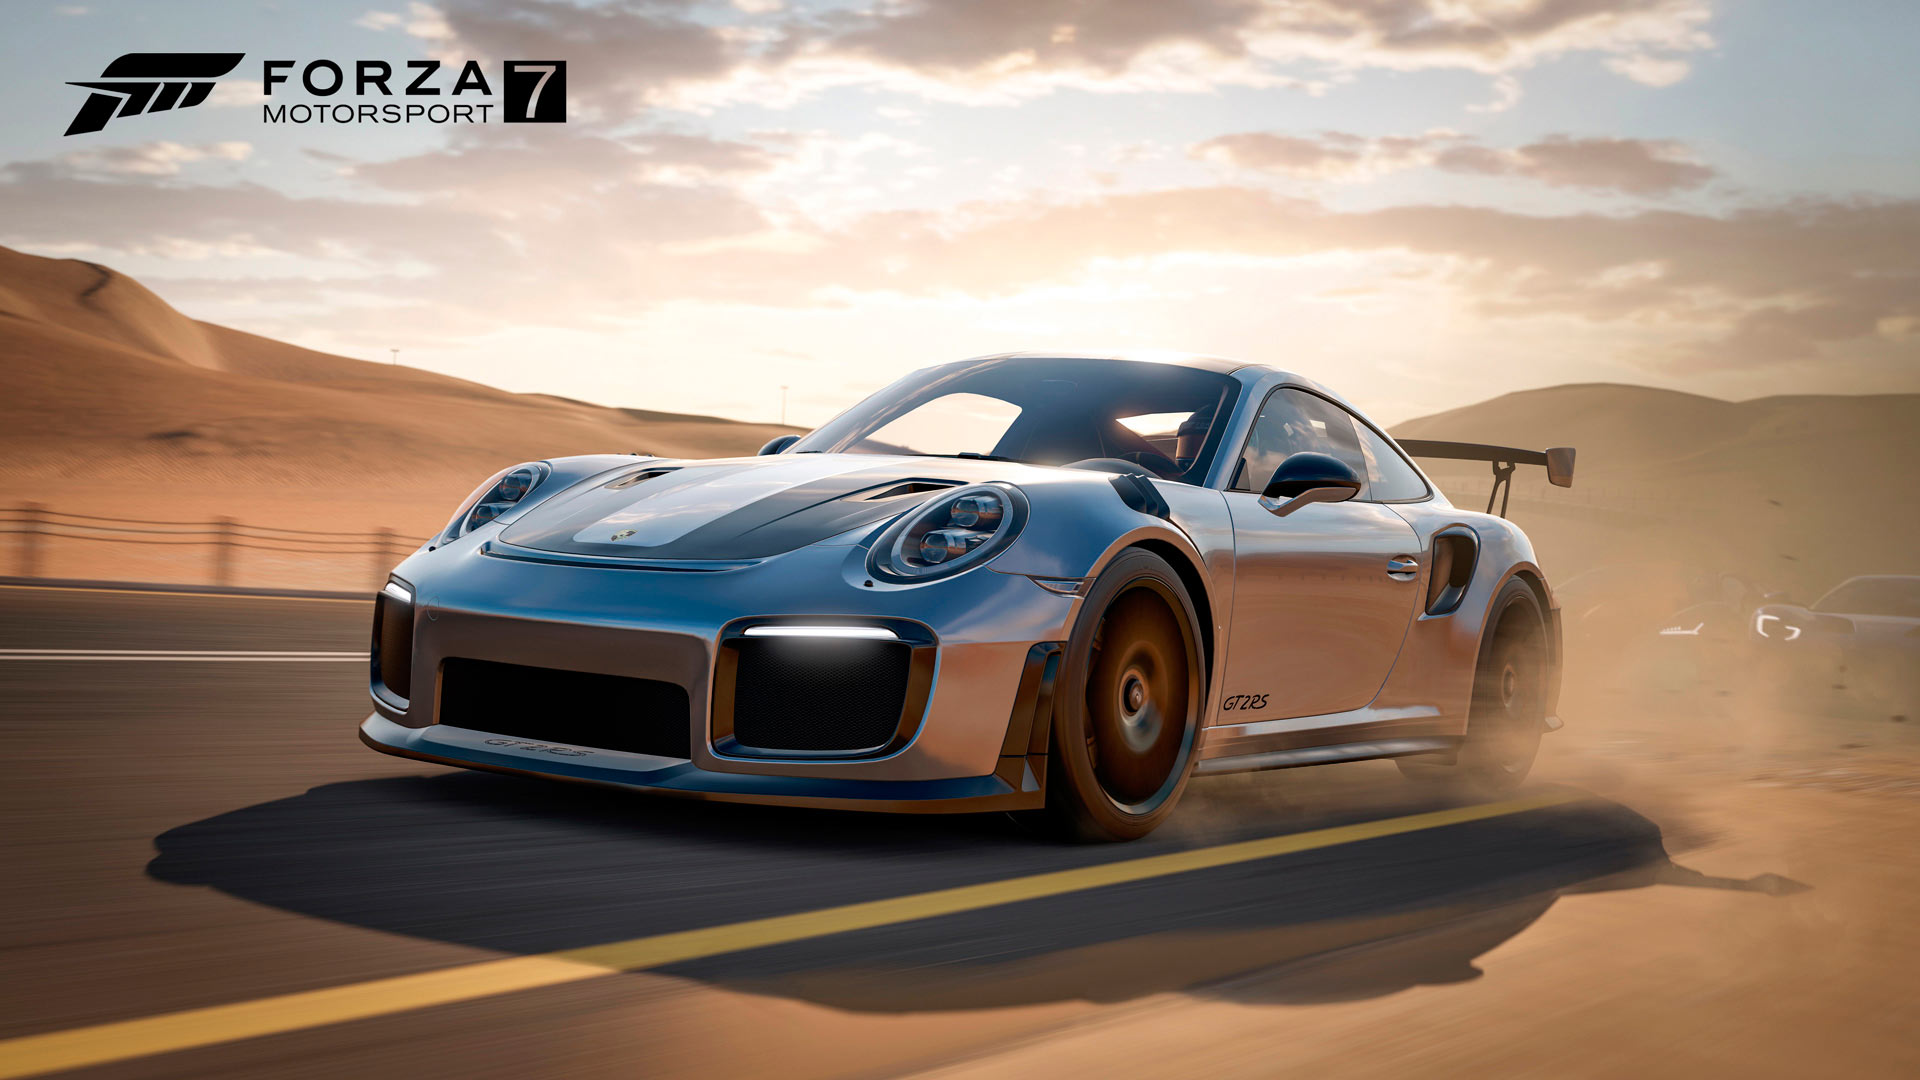 Forza Motorsport 7, análisis del mejor juego de la saga hasta la fecha